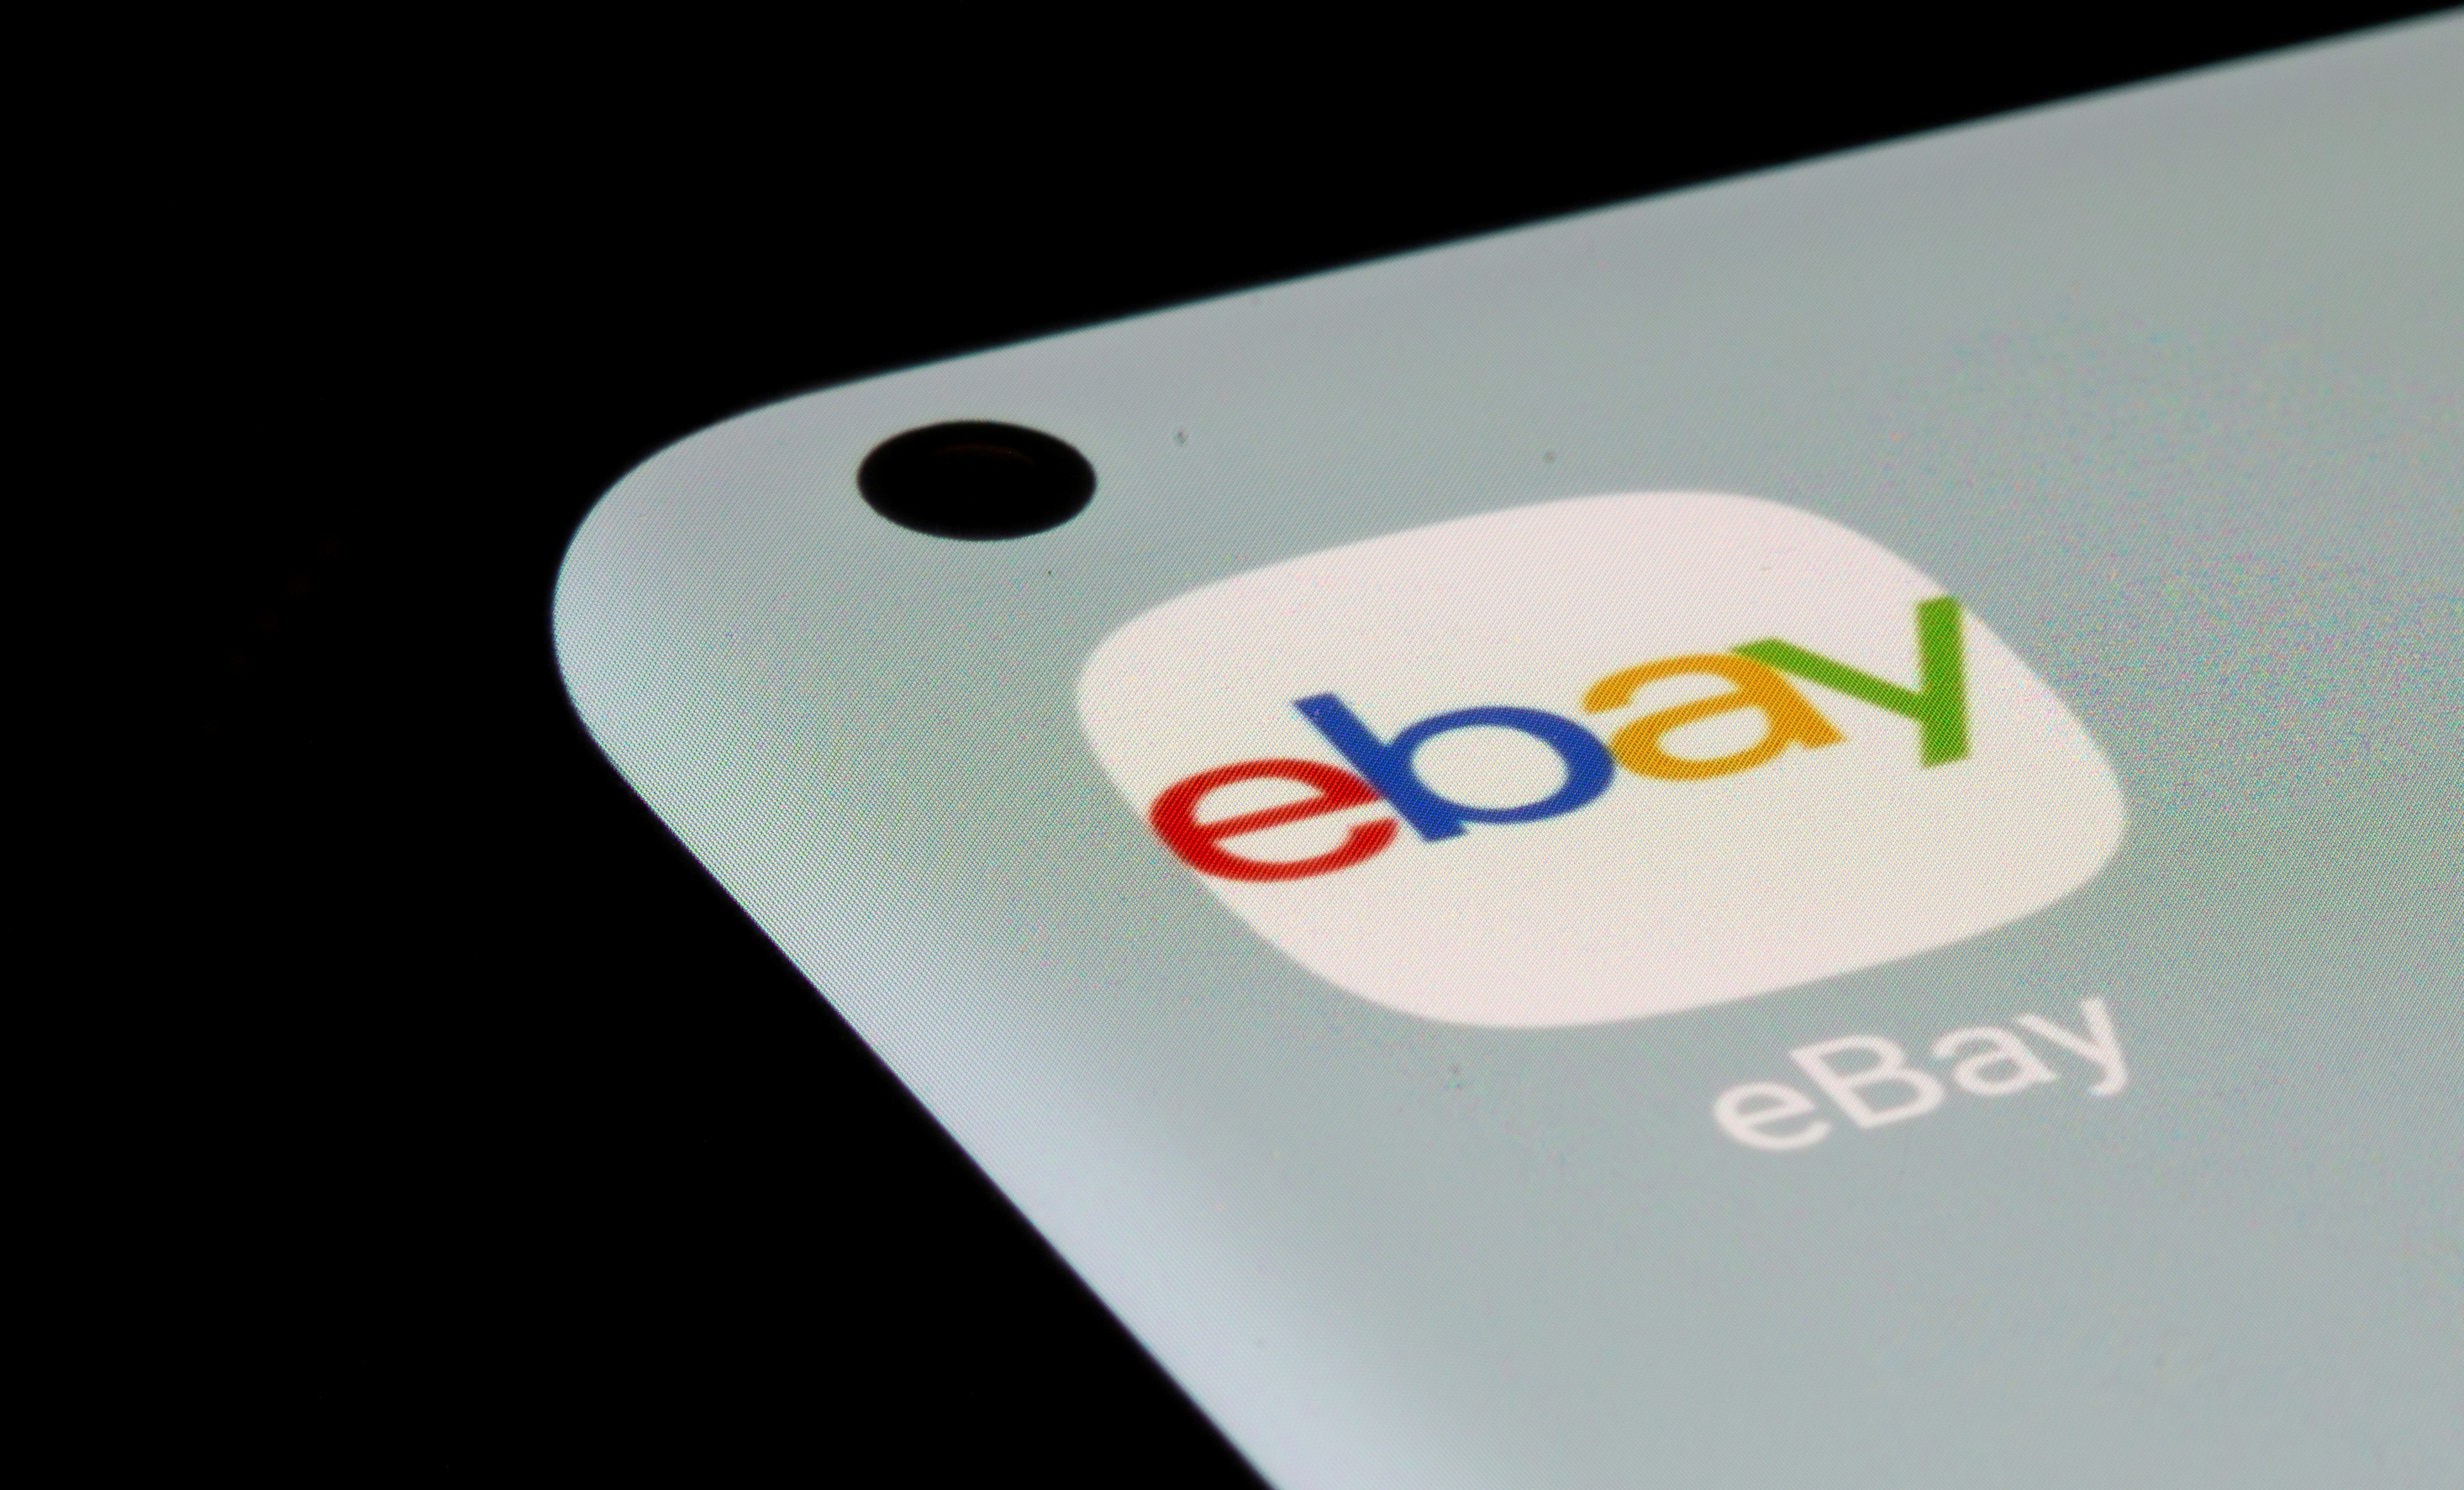 Ebay eBay Switches